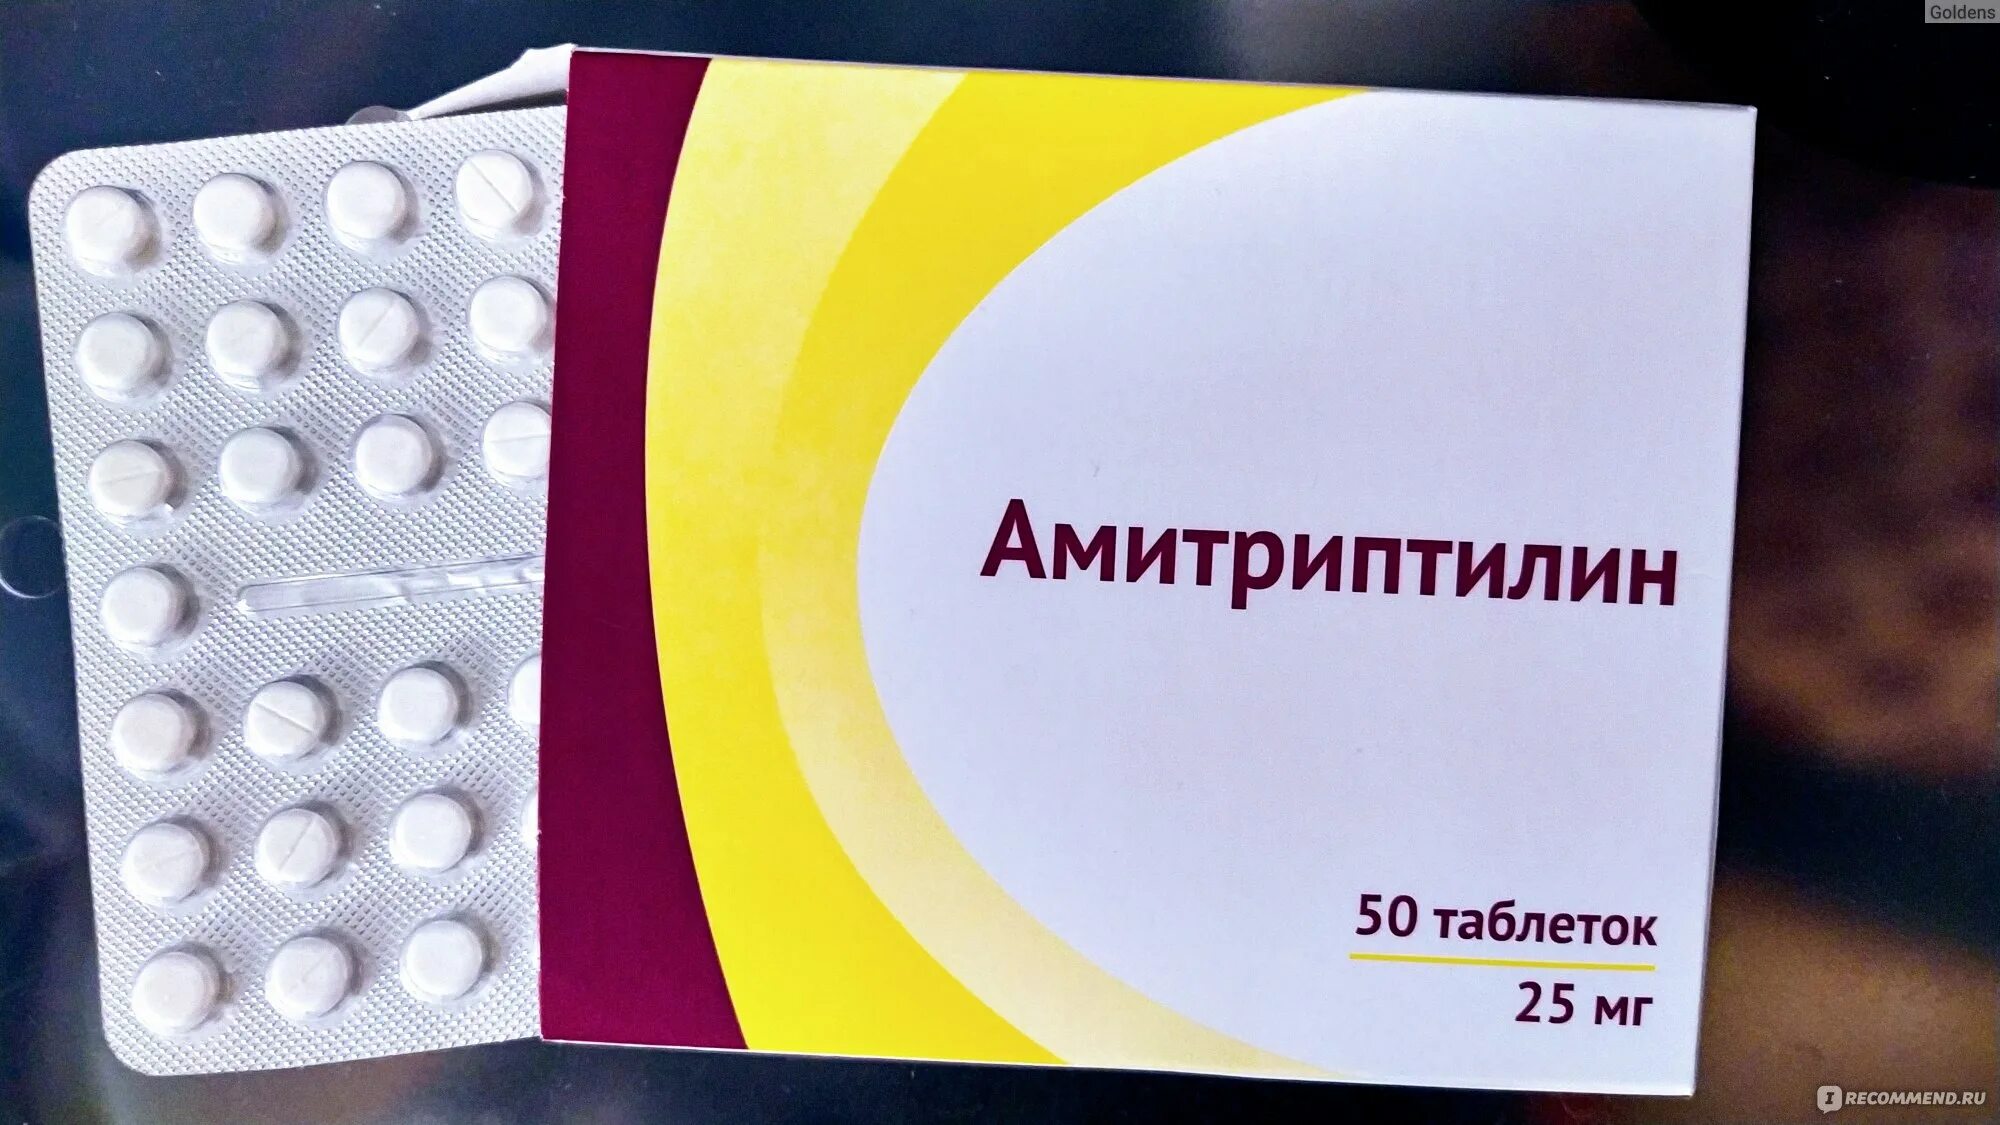 Амитриптилин 50 мг. Амитриптилин 10 мг. Амитриптилин 25 мг. Амитриптилин таблетки 50мг. Антидепрессанты отзывы пациентов принимавших